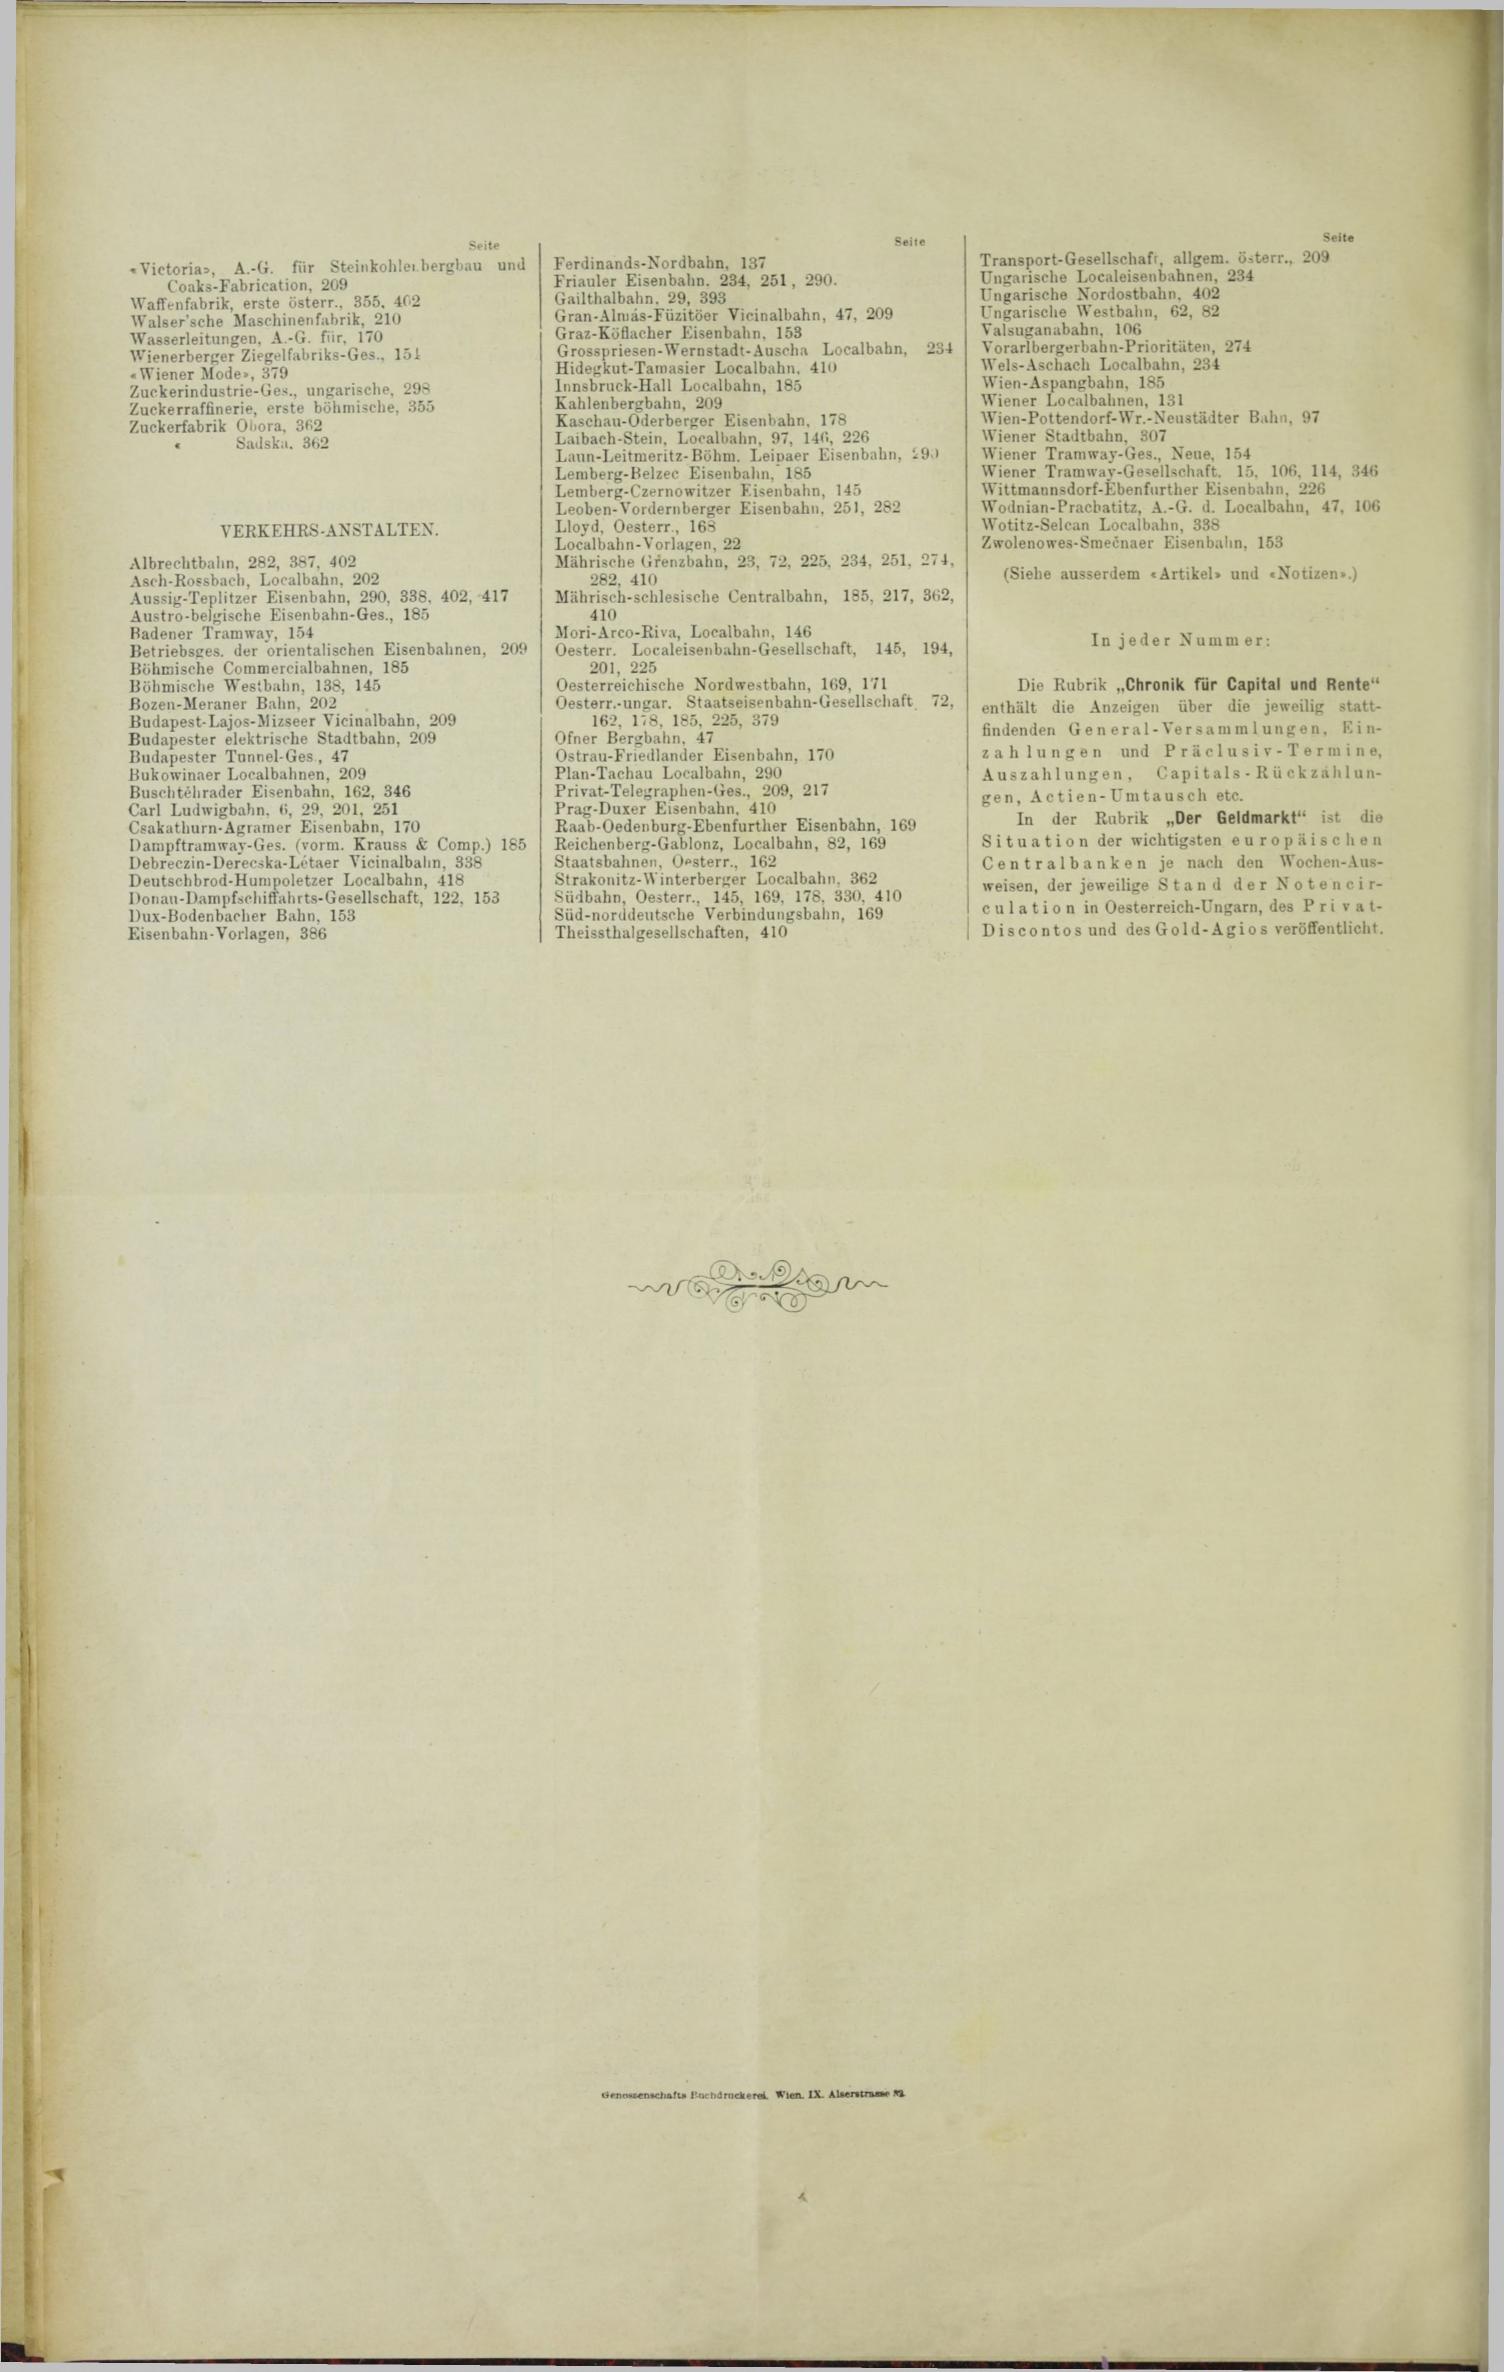 Der Tresor 30.03.1893 - Seite 12